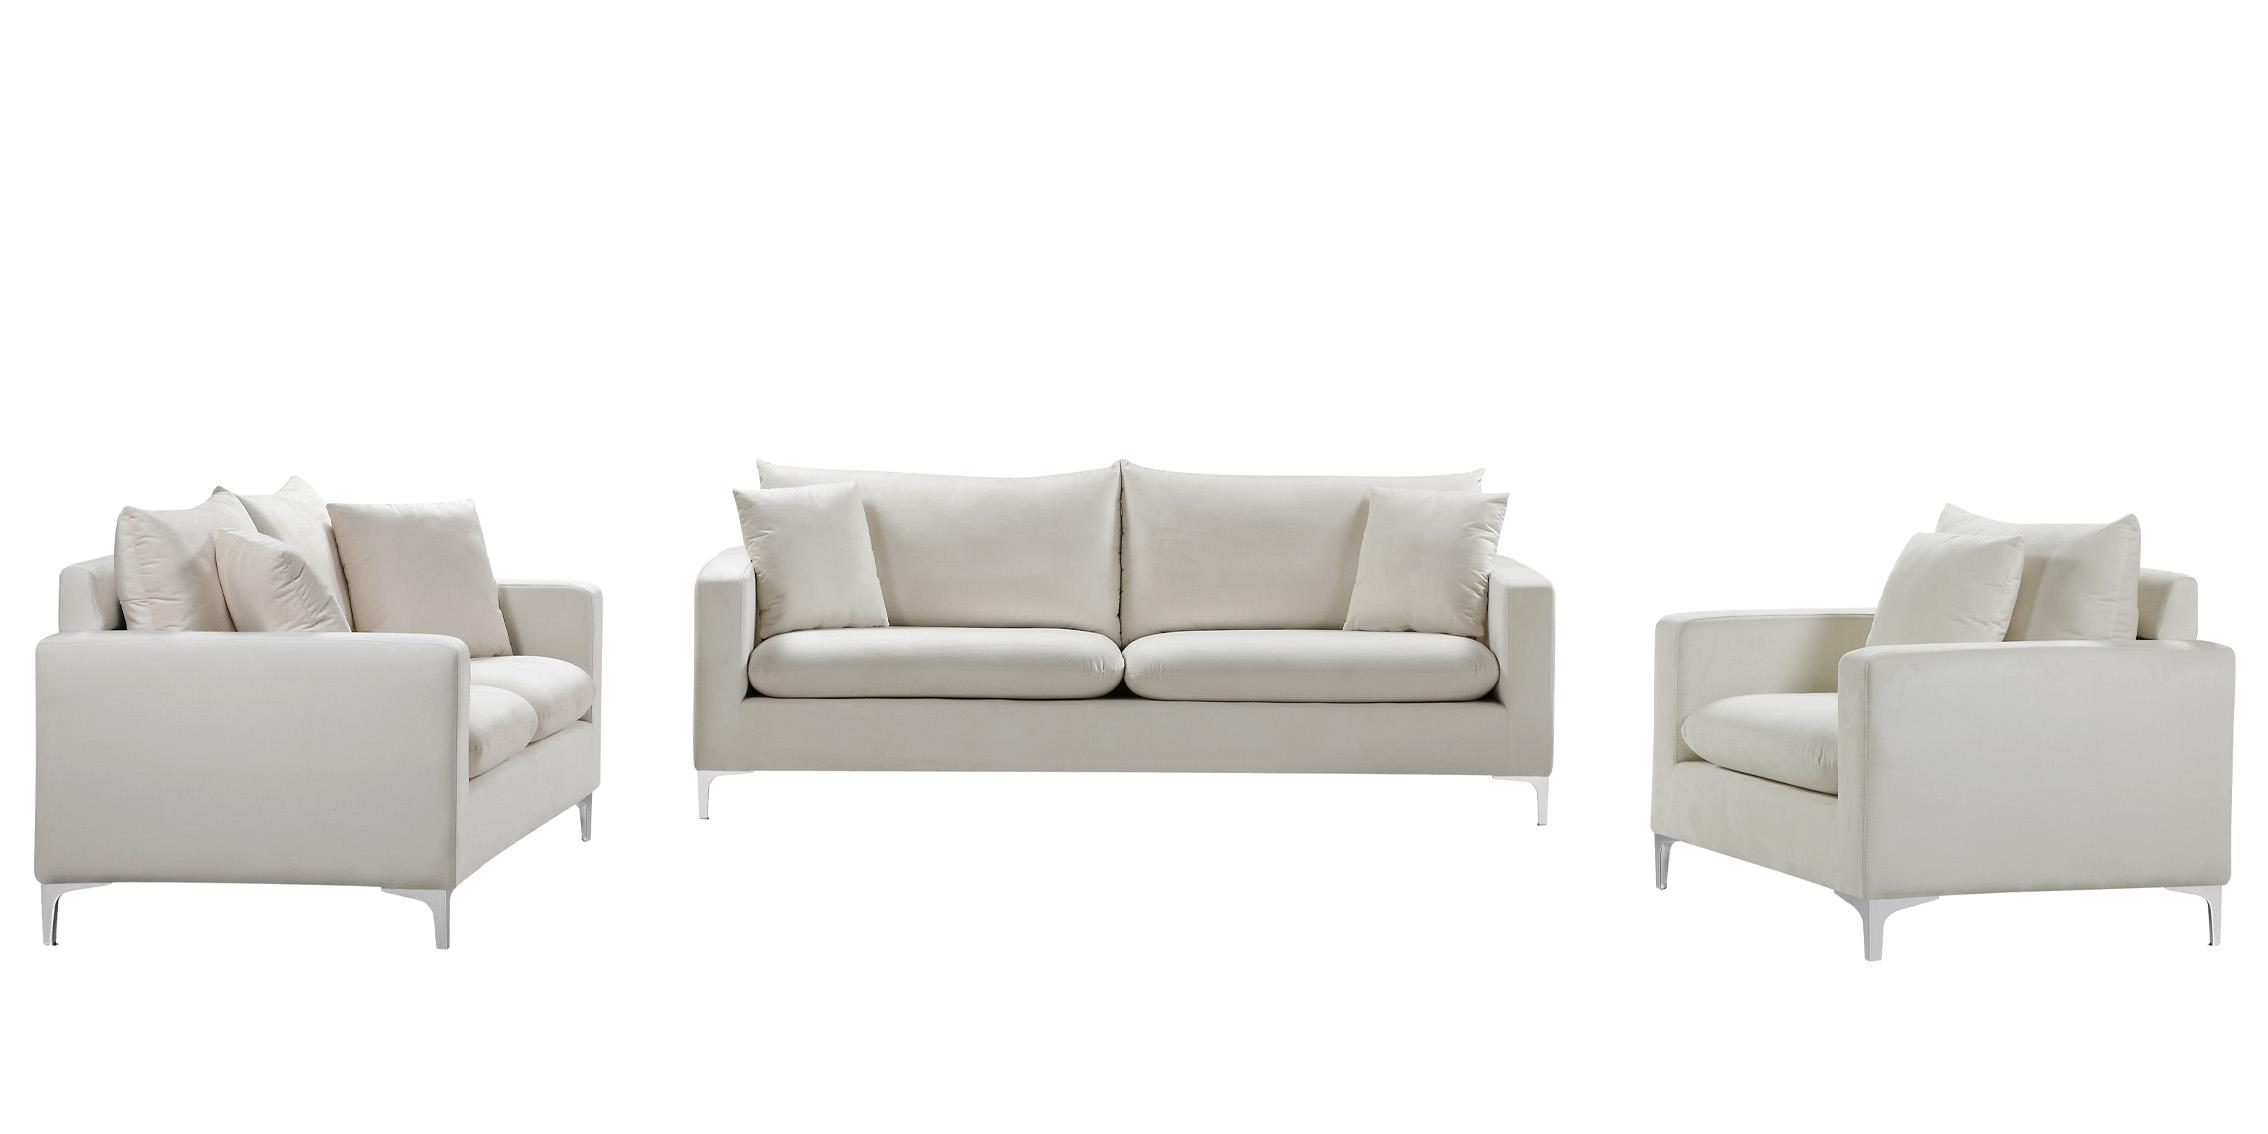 

    
633Cream-S Meridian Furniture Sofa
